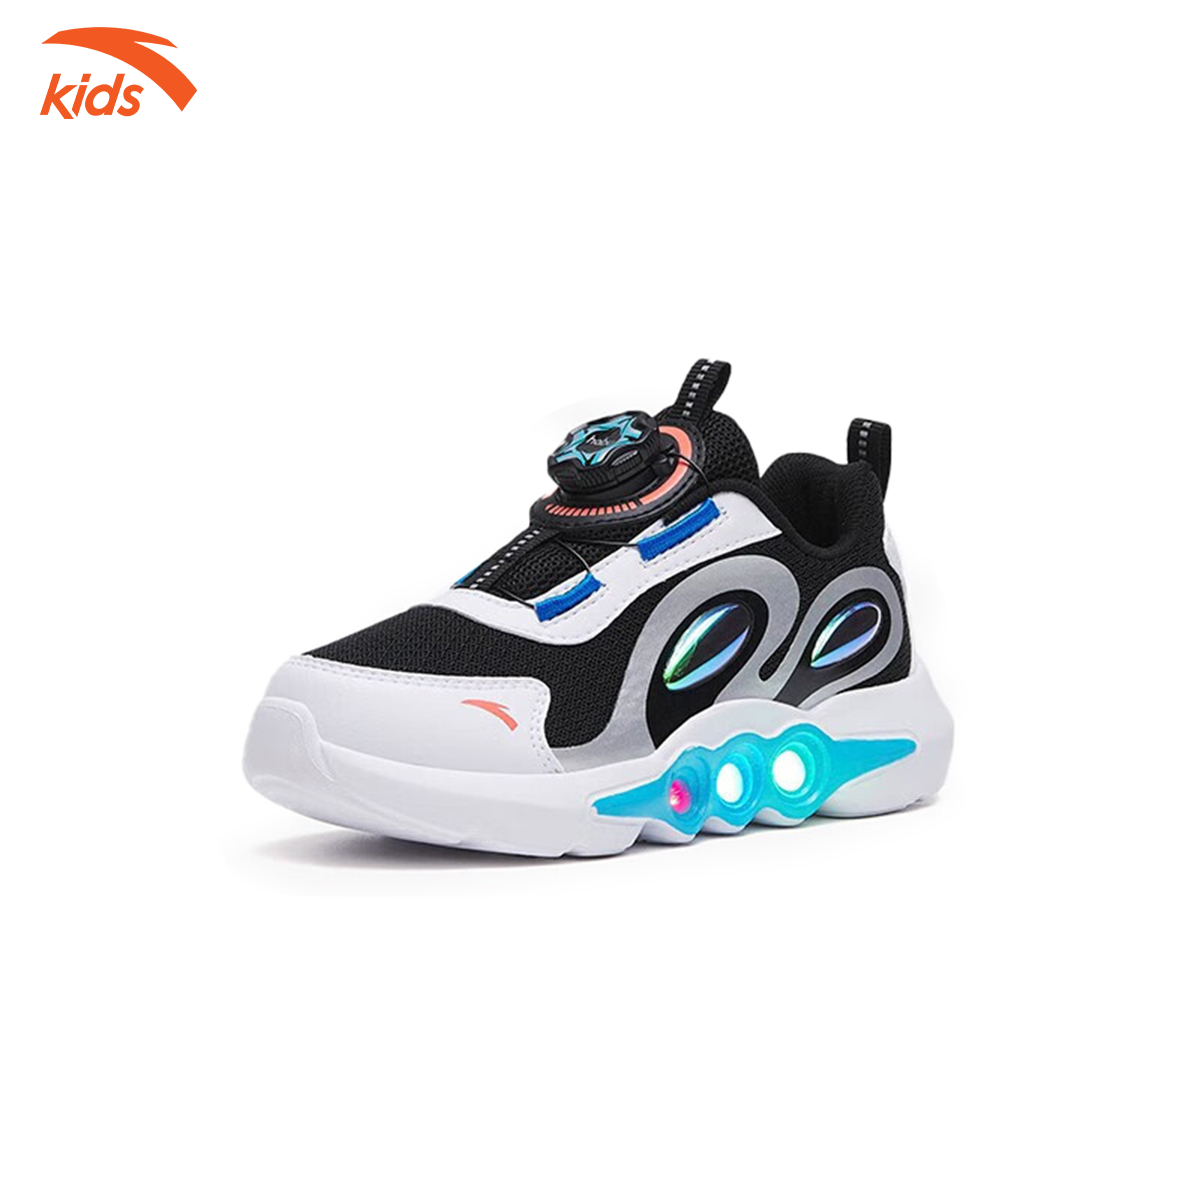 Giày thời trang thể thao bé trai Anta Kids, dòng chạy, kết hợp đèn phát sáng 312319915